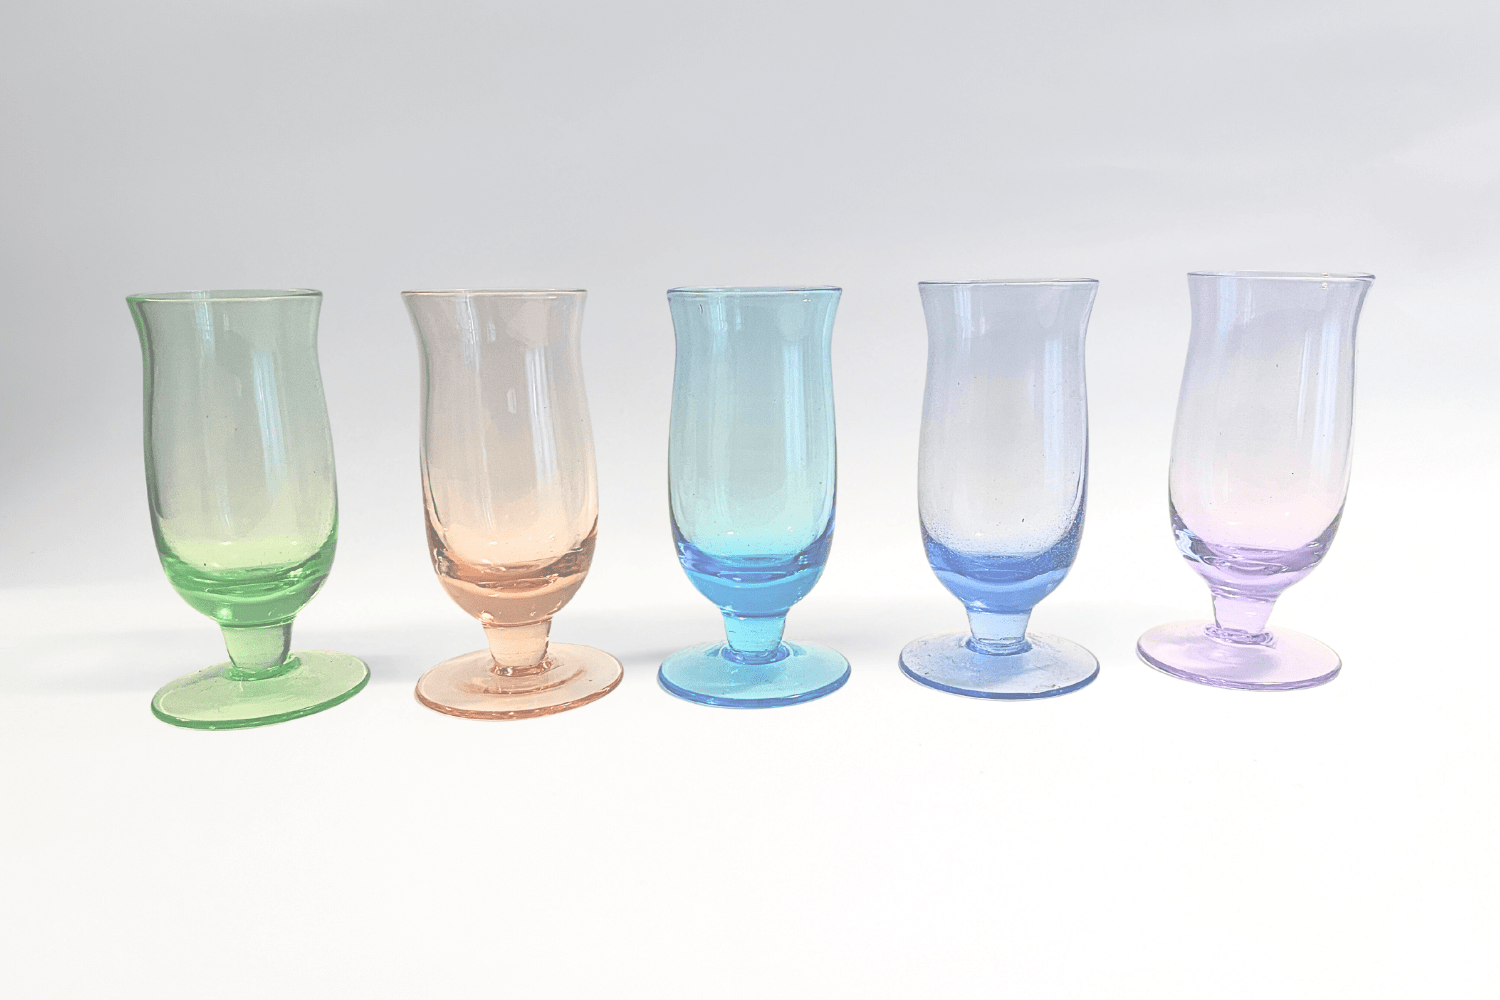 4 Vintage Acid Etched Cocktail Martini Glasses, 1950's Crystal Cocktail  Glasses